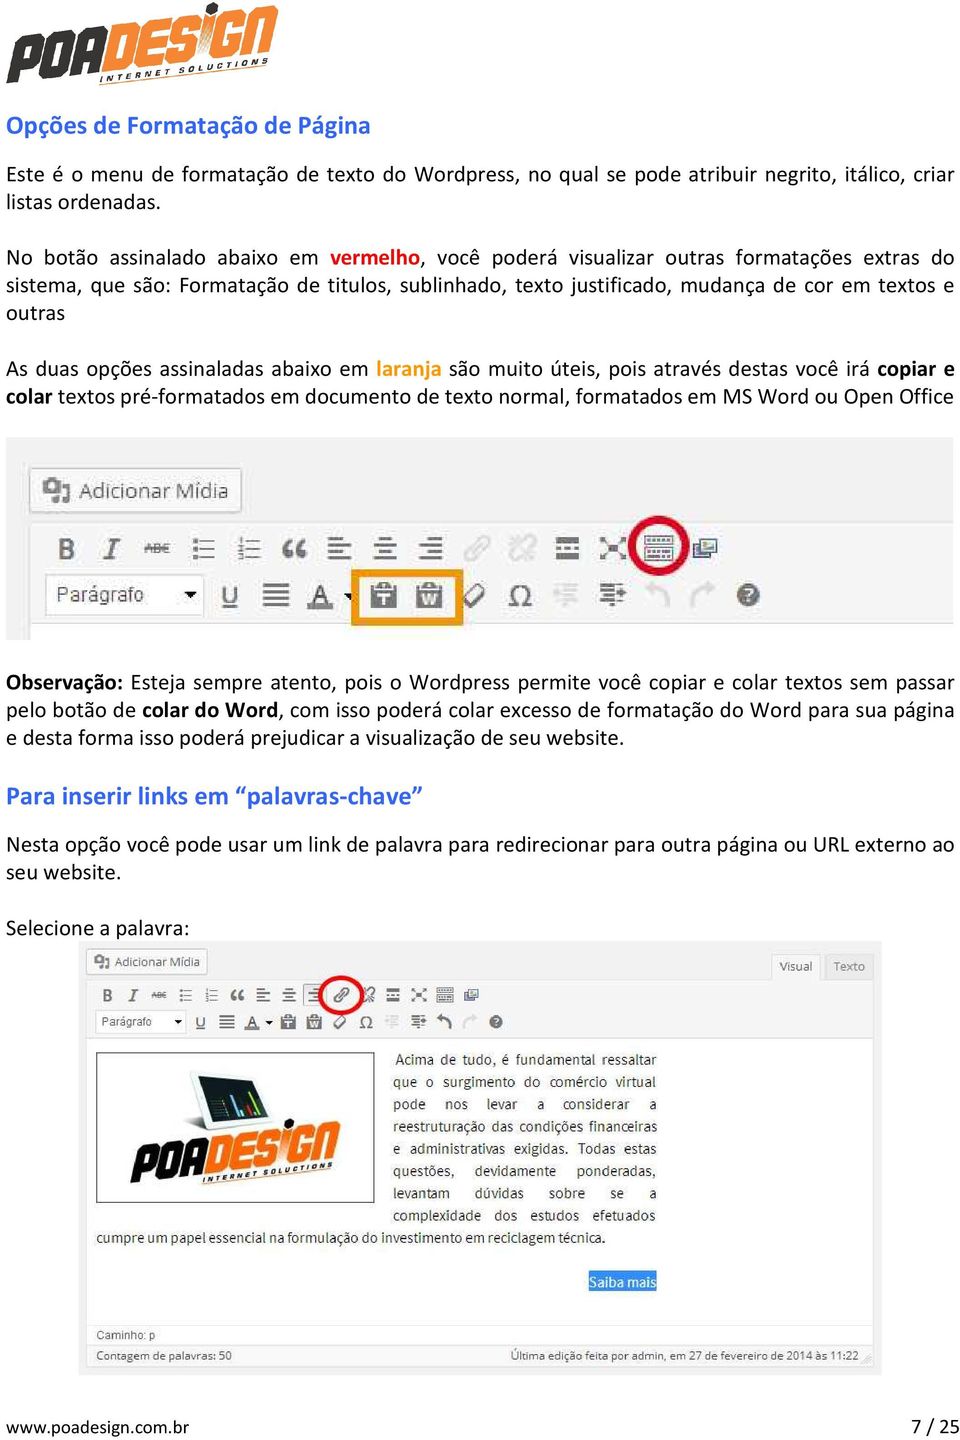 As duas opções assinaladas abaixo em laranja são muito úteis, pois através destas você irá copiar e colar textos pré-formatados em documento de texto normal, formatados em MS Word ou Open Office